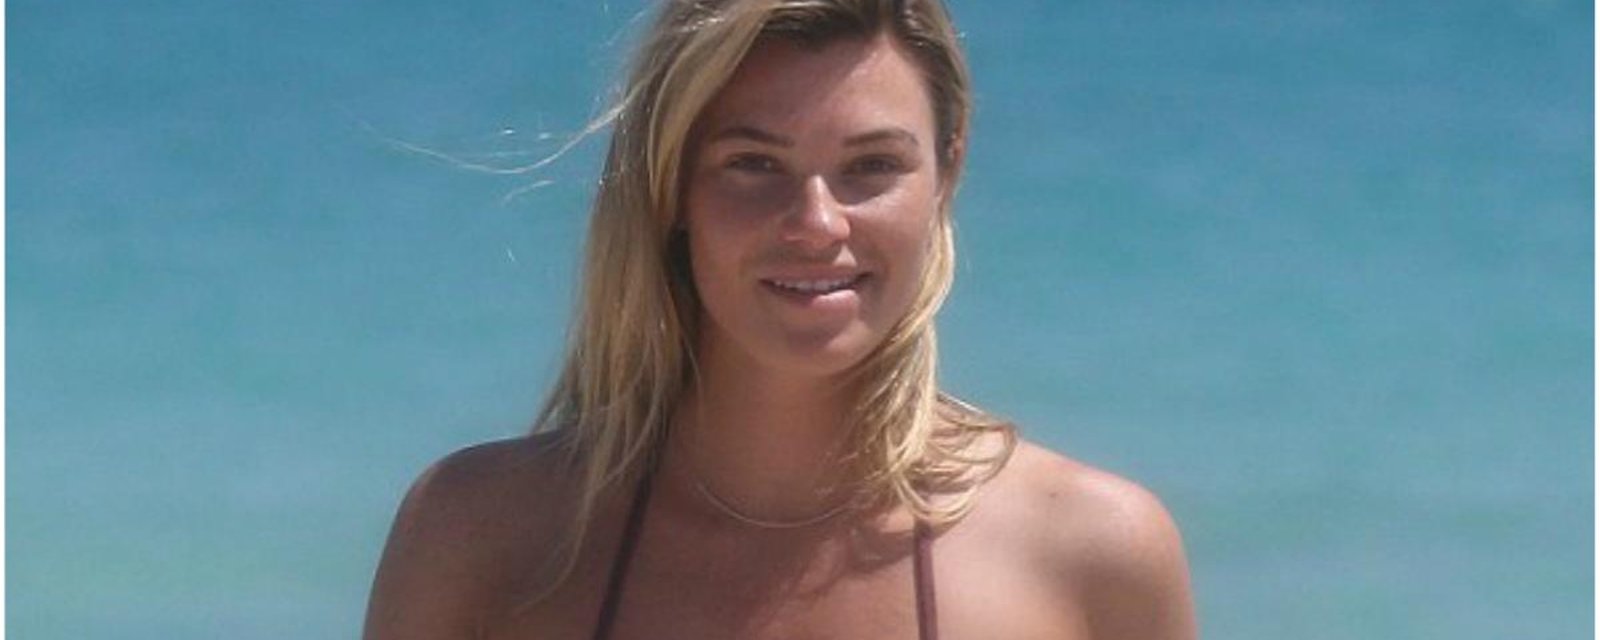 La mannequin Samantha Hoops pose en bikini très sexy à Miami et suscite de nombreuses réactions!